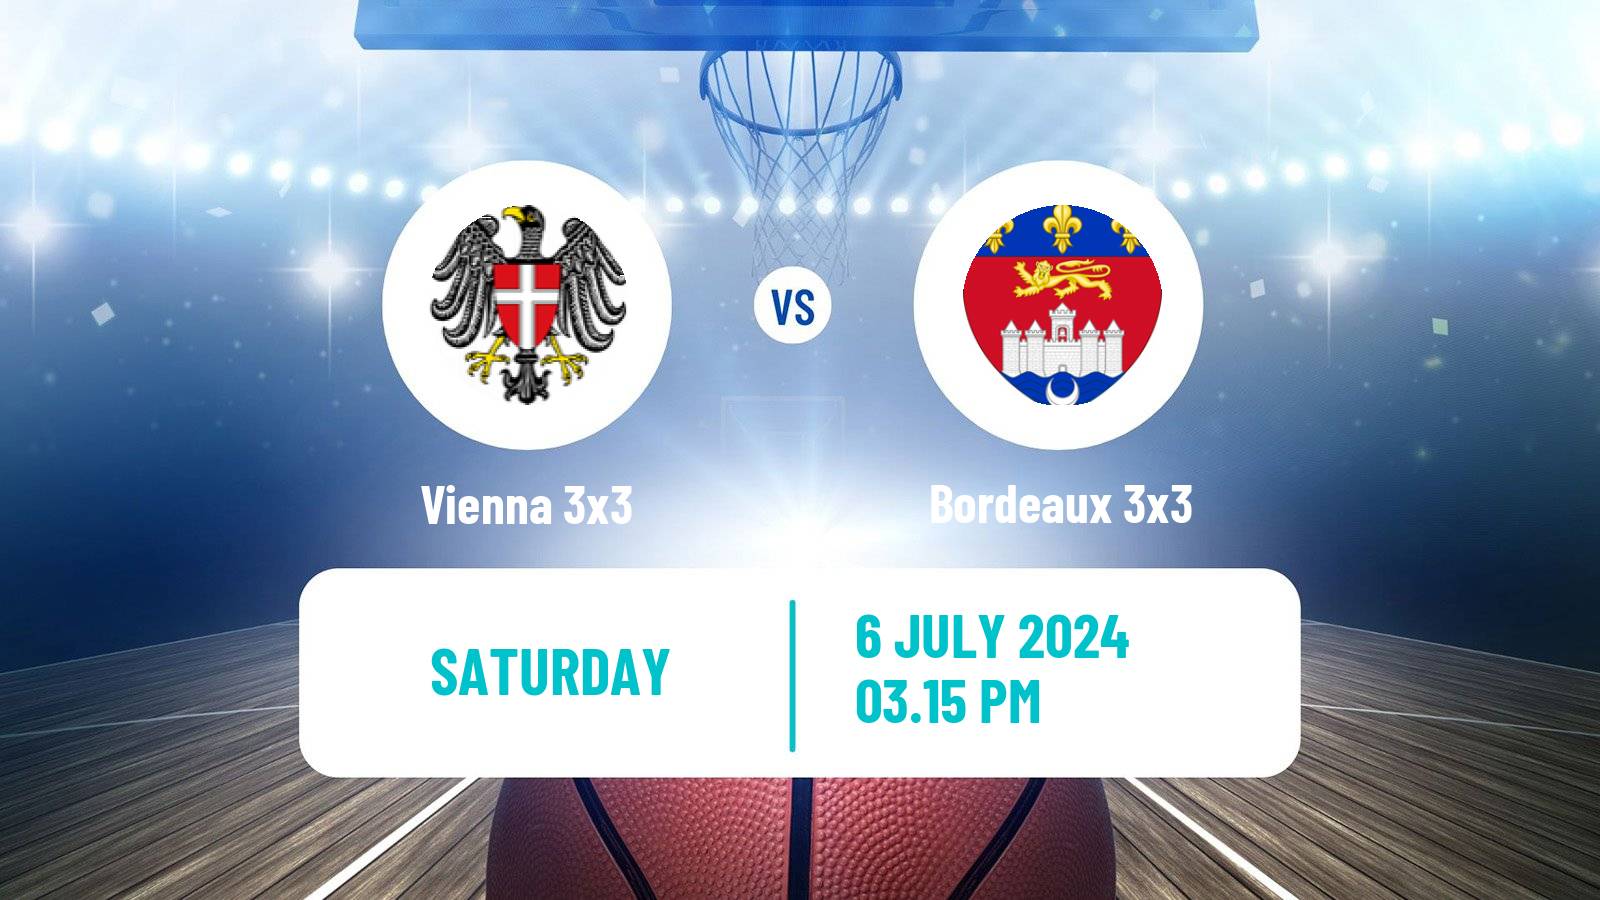 Basketball World Tour Edmonton 3x3 Vienna 3x3 - Bordeaux 3x3